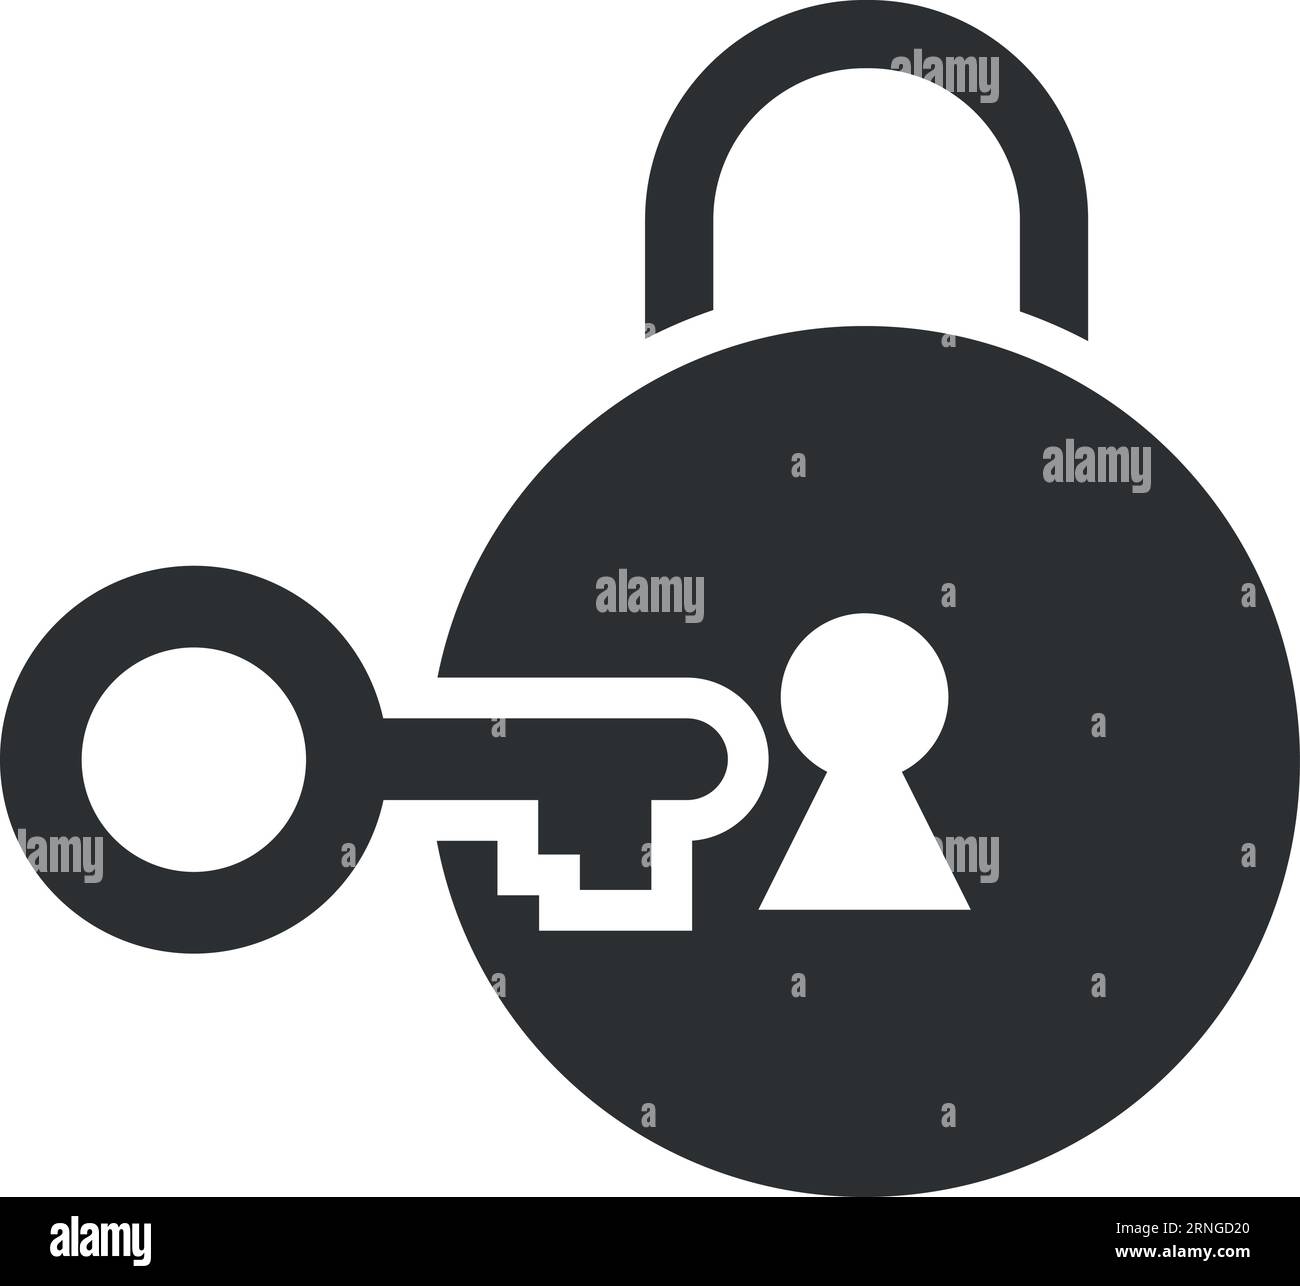 Key open lock icon. Private access symbol Stock Vector